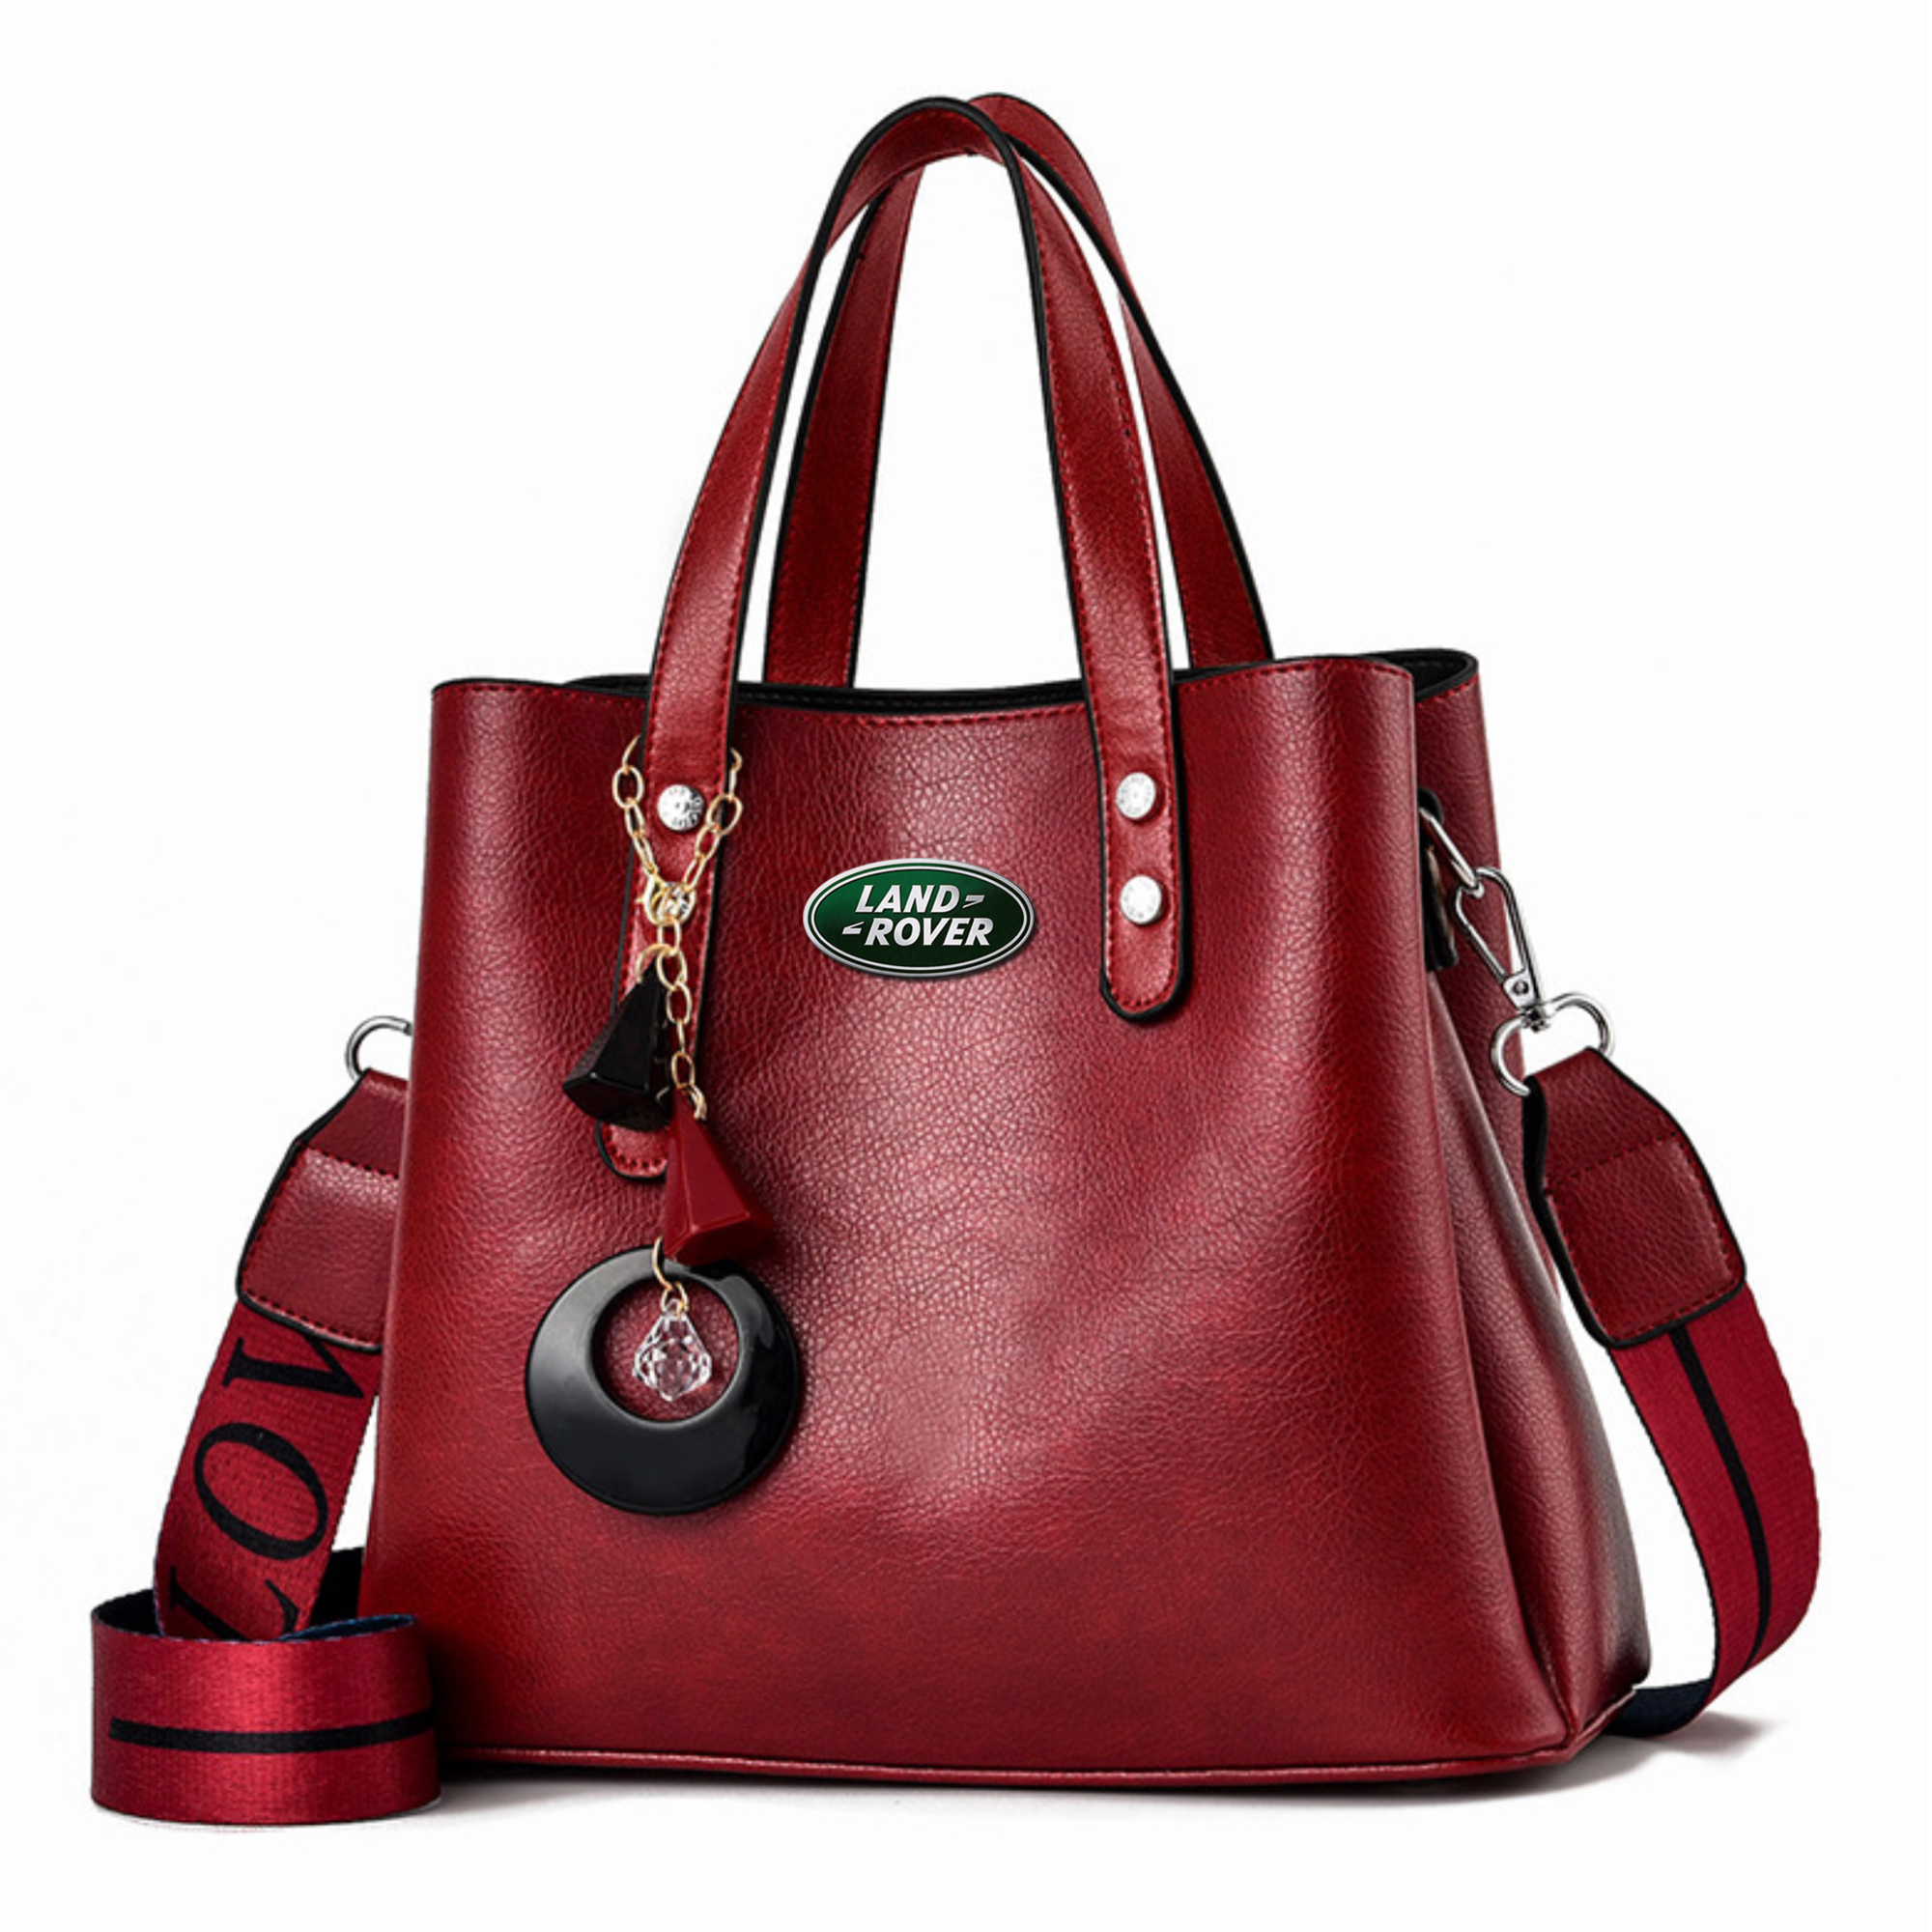 branded ladies handbags in sri lanka | branded handbags price in srilanka |